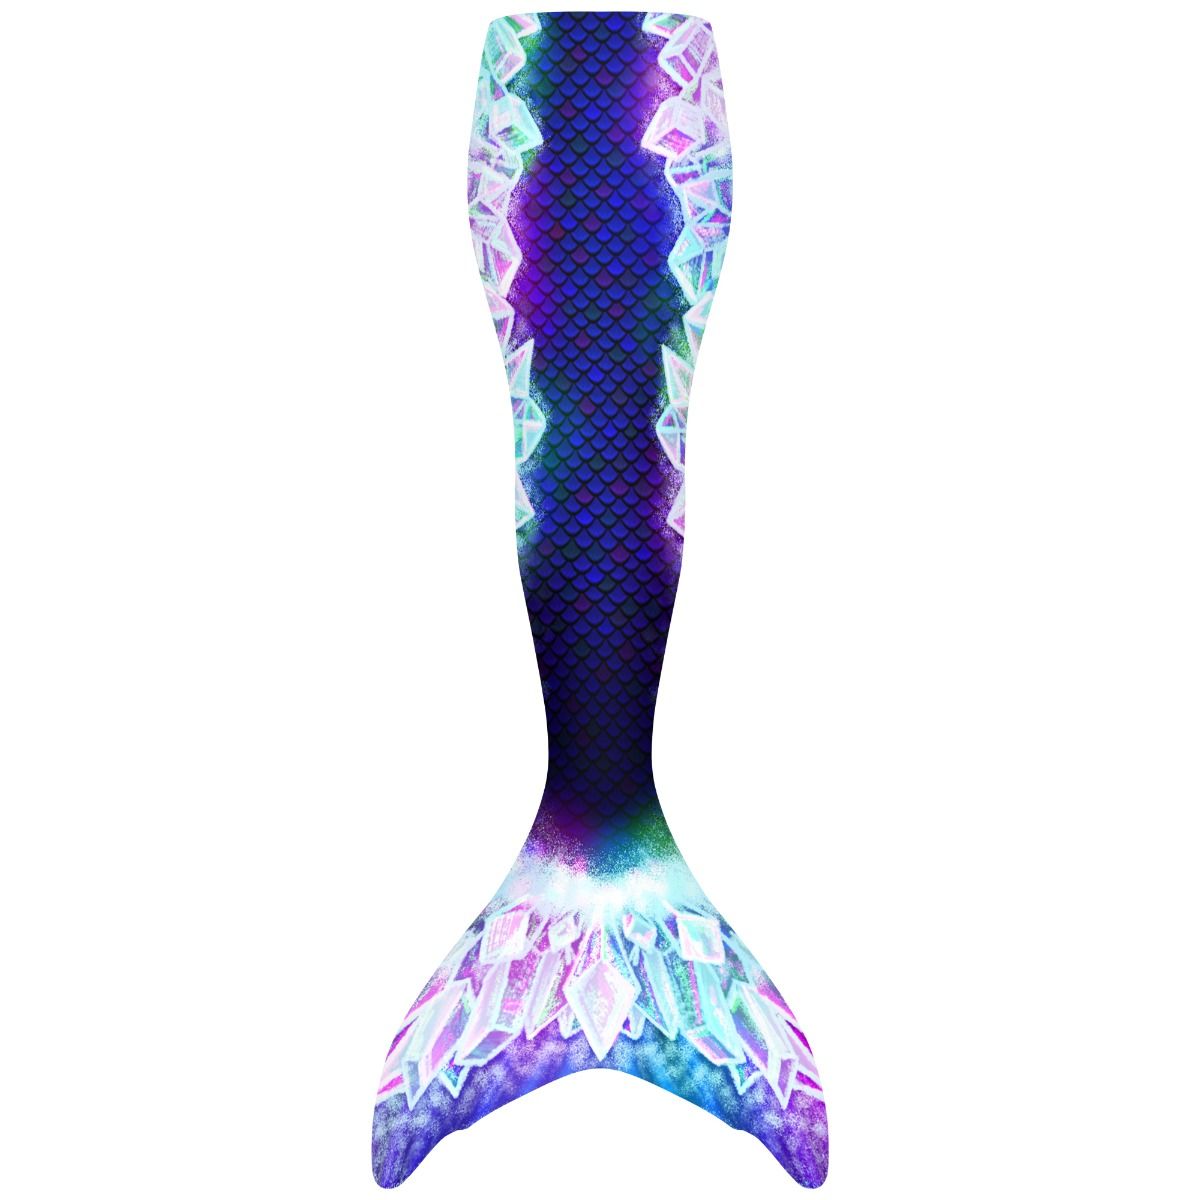 Retro Tails - Benutzerdefinierter Nachdruck von Meerjungfrauenschwänzen